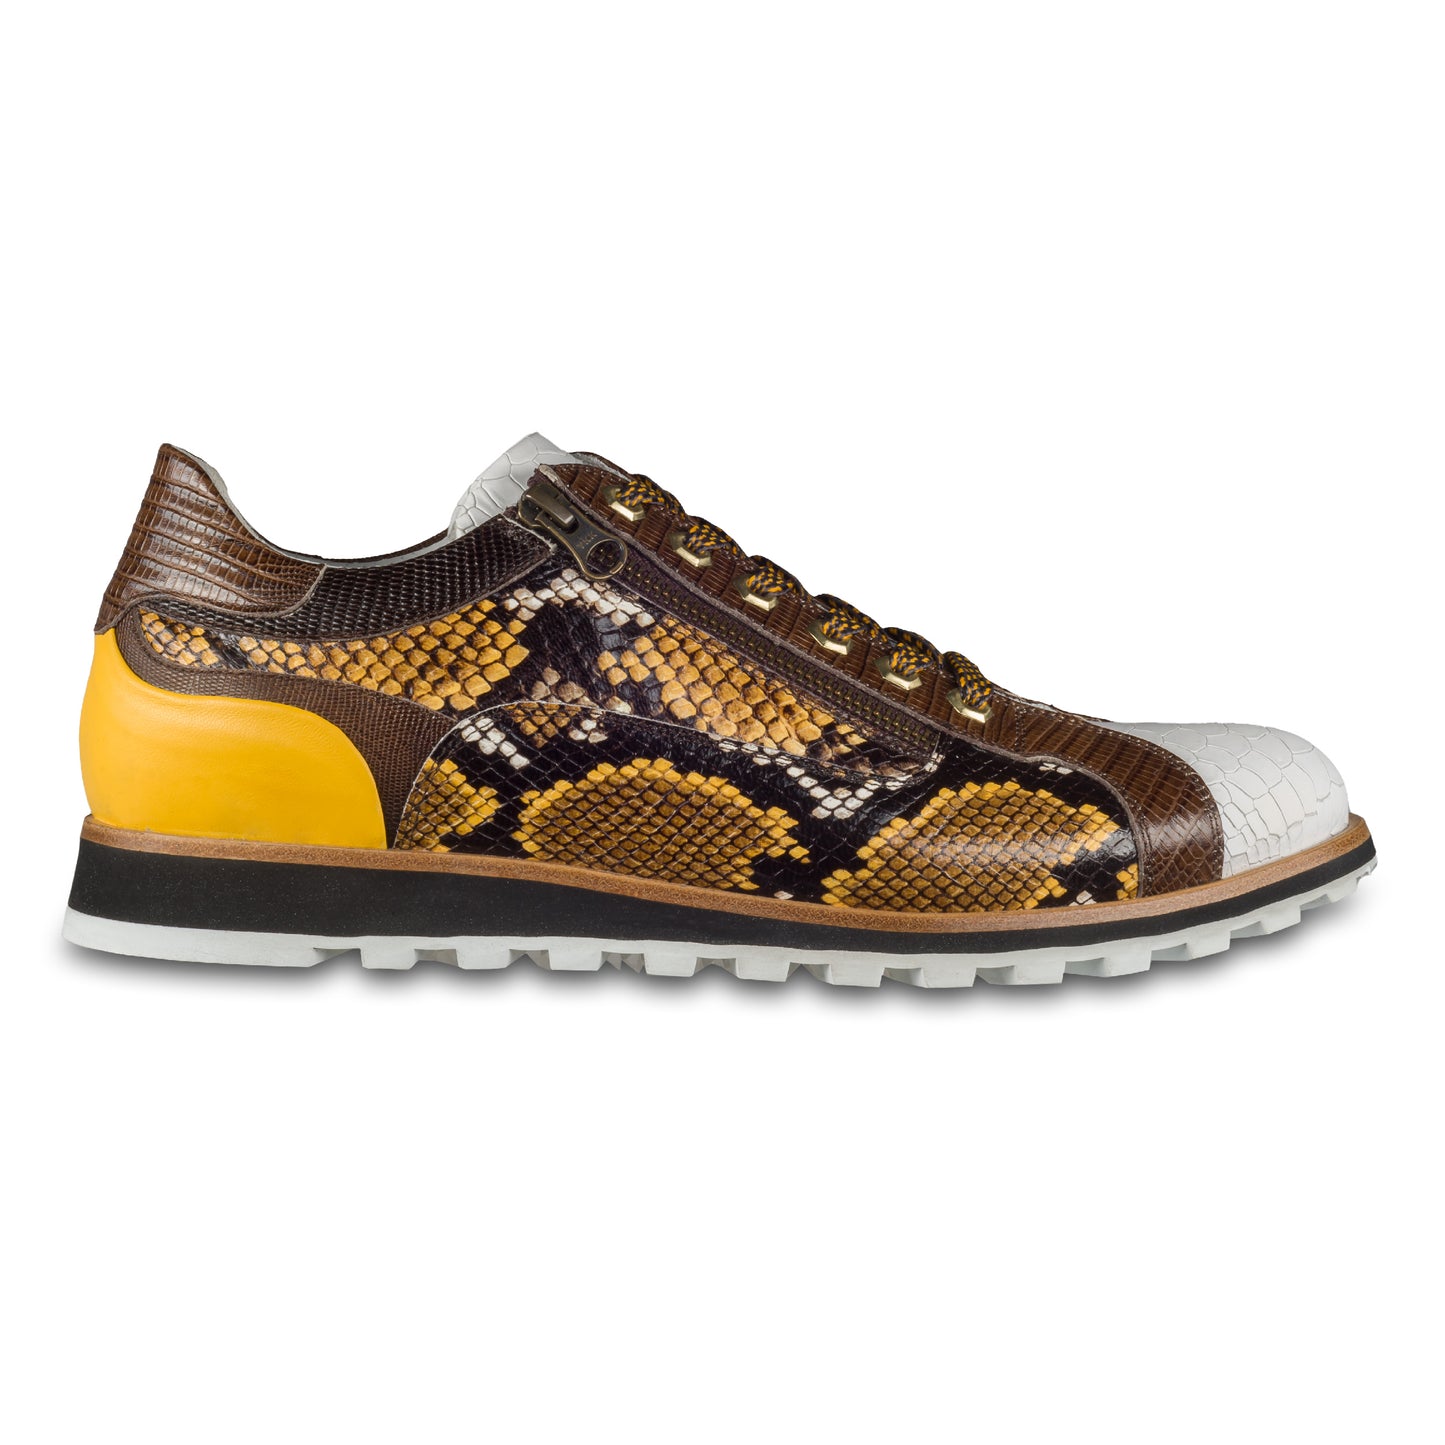 Lorenzi Herren Leder-Sneaker in weiß / gelb / braun mit Schlangen-Prägung. Handgefertigt. Seitliche Ansicht der Außenseite rechter Schuh. Gemusterte Schnürsenkel in grau/gelb.